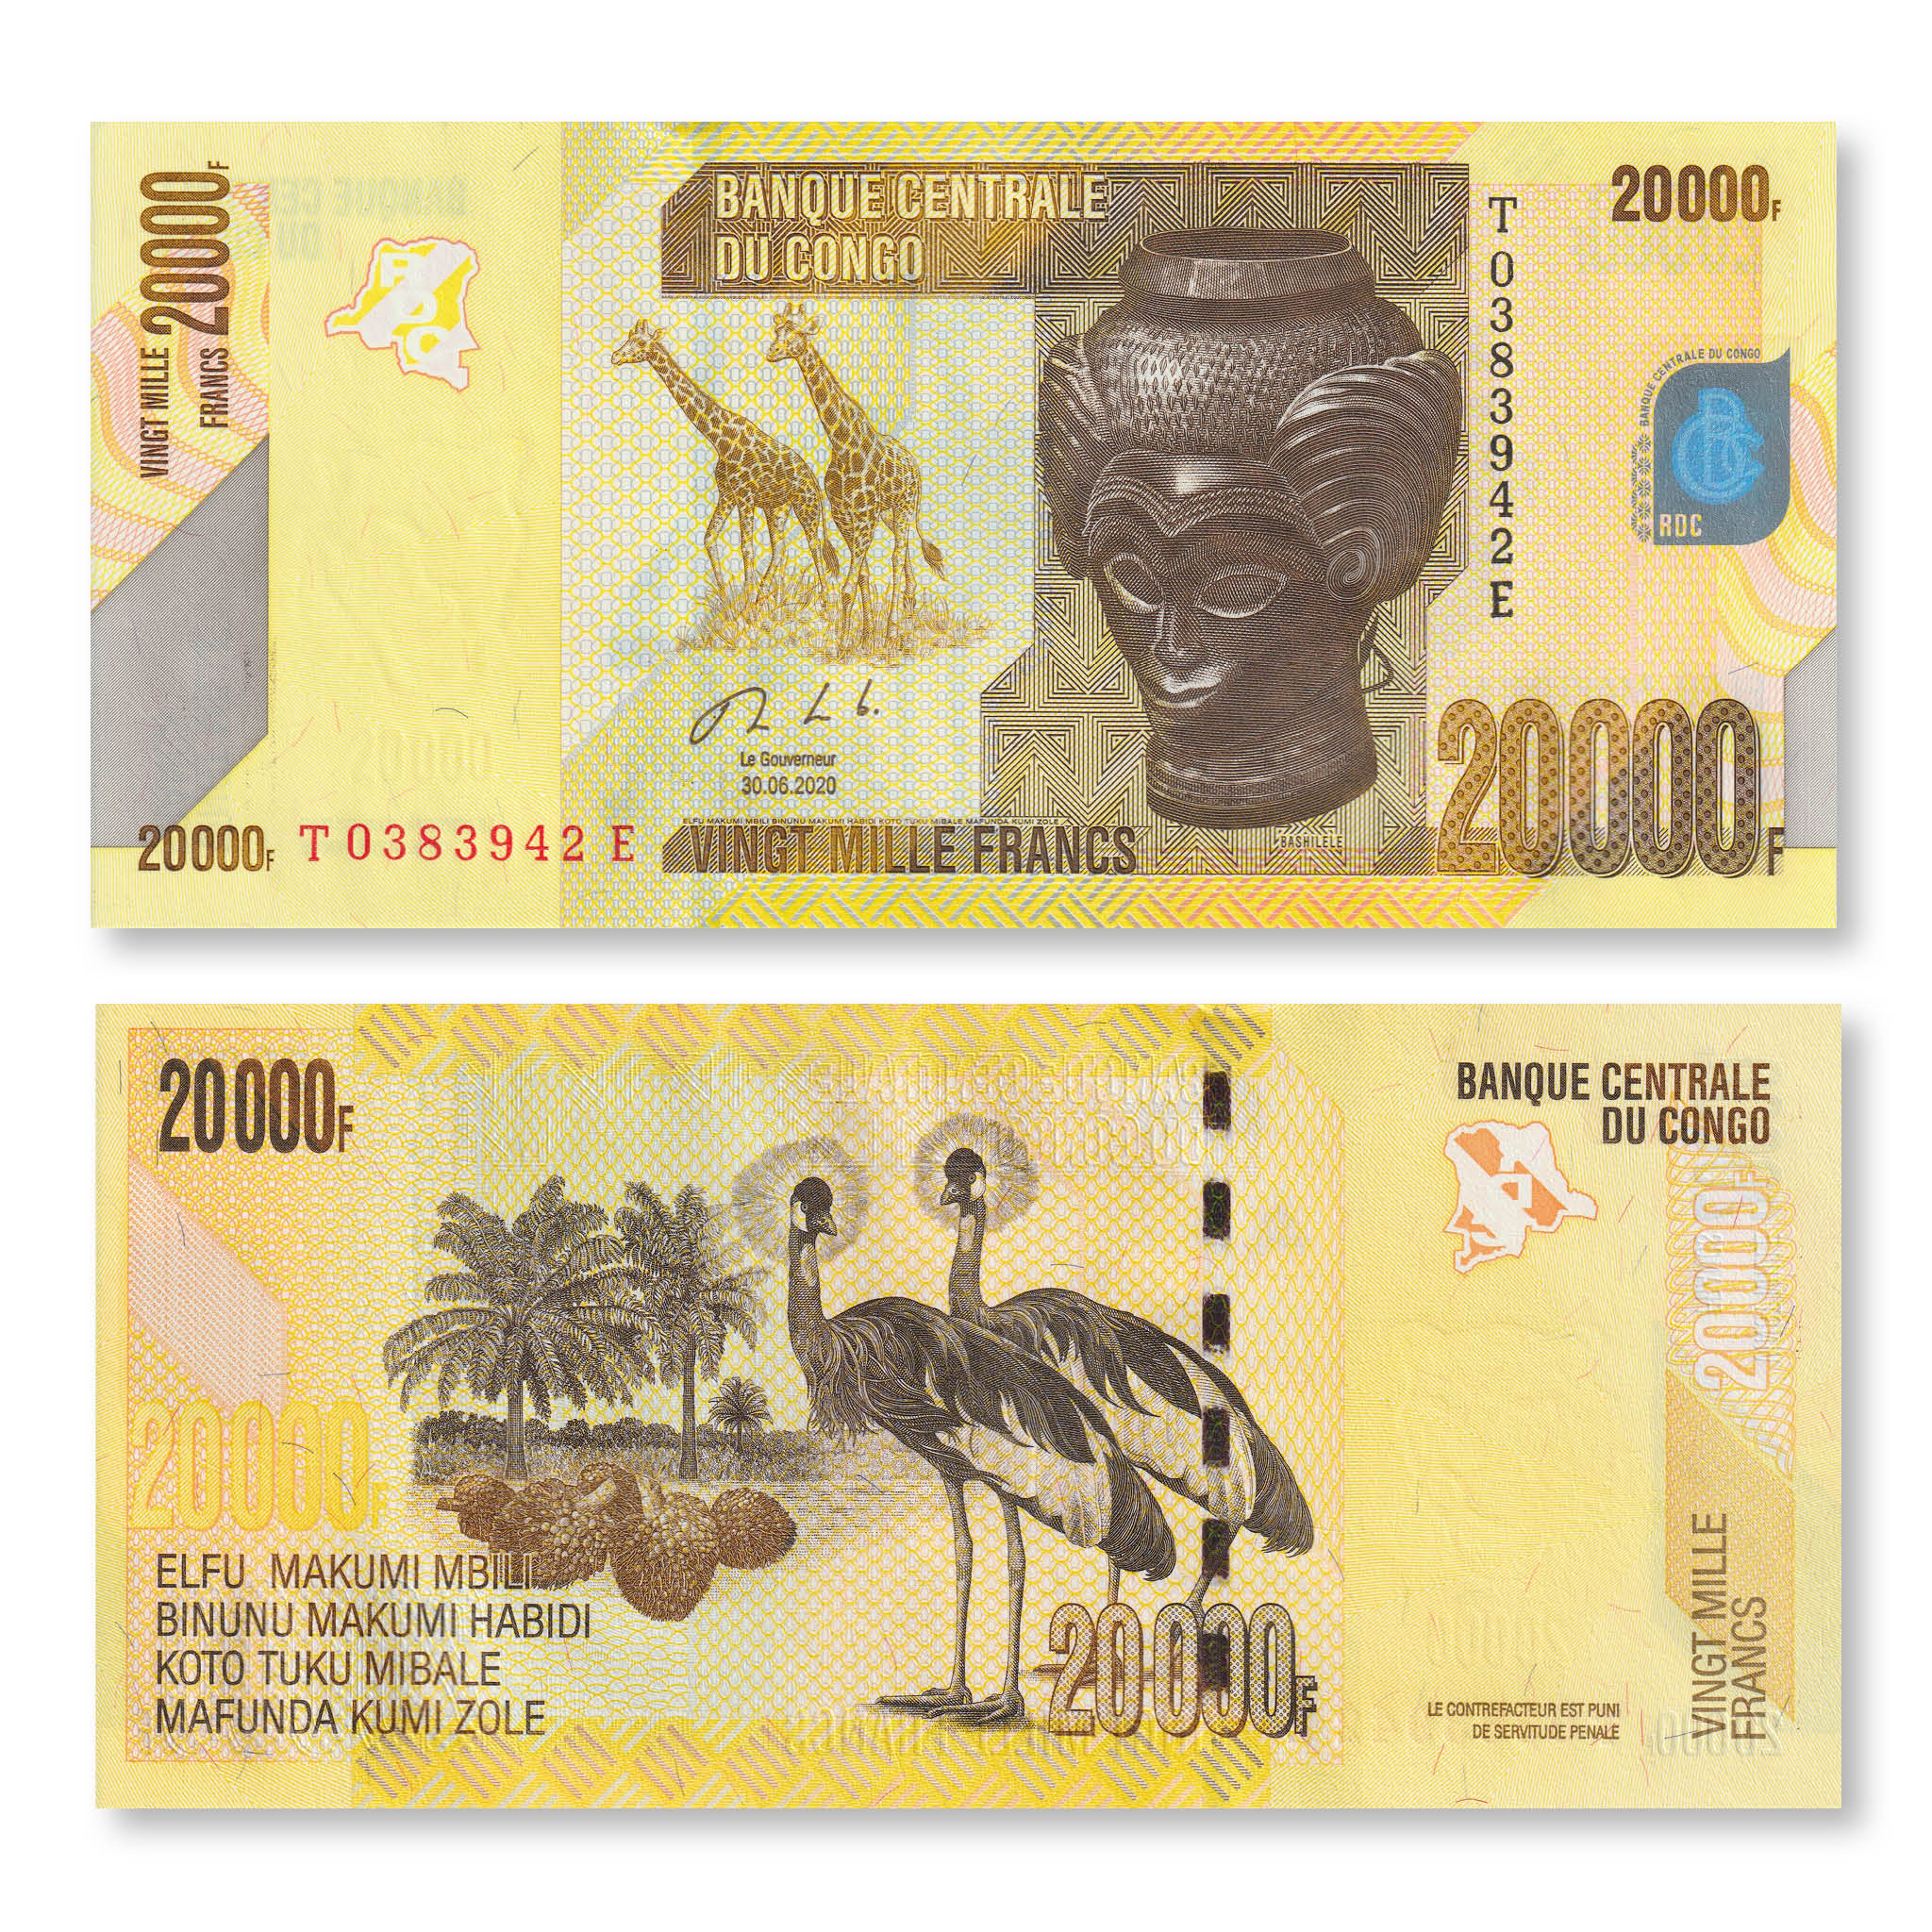 Congo Democratic Republic 20000 Francs, 2020, B326c, P104, UNC - Robert's World Money - World Banknotes